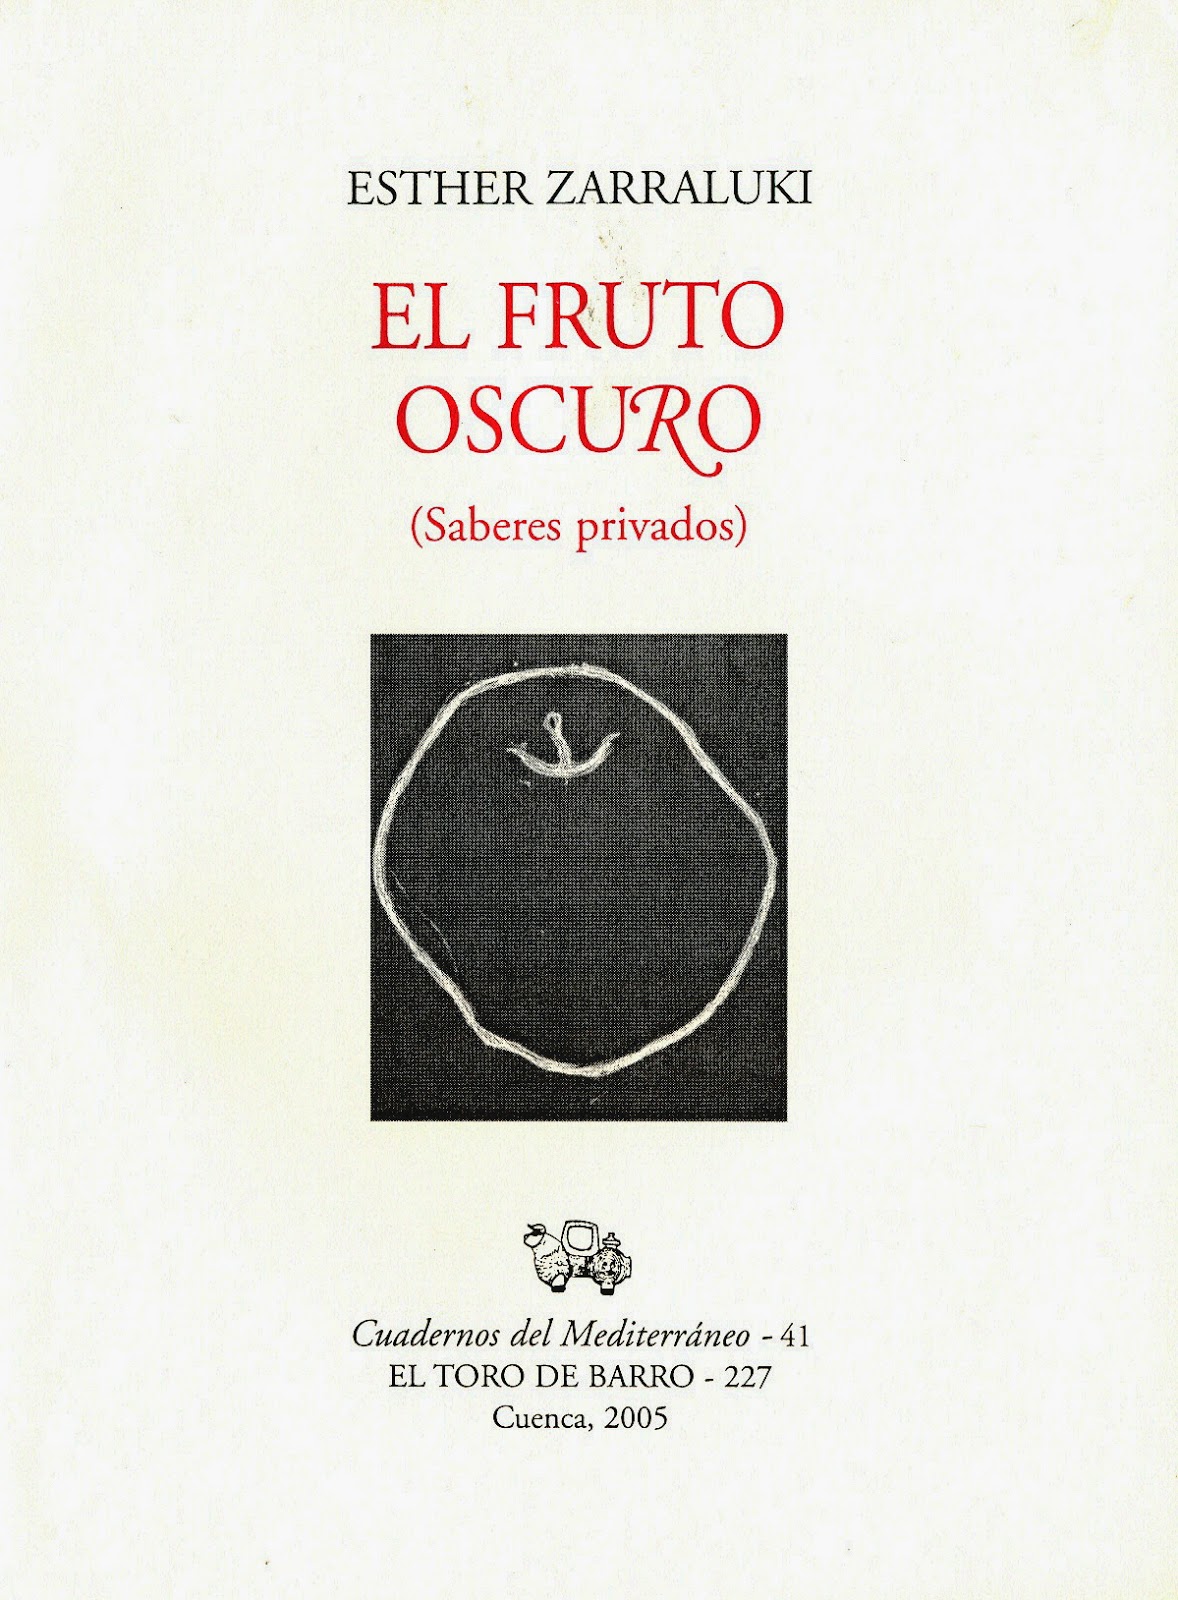 Esther Zarraluki, "El fruto oscuro", Col. Cuadernos del Mediterráneo, Ed. El Toro de Barro, Tarancón de Cuenca 2005